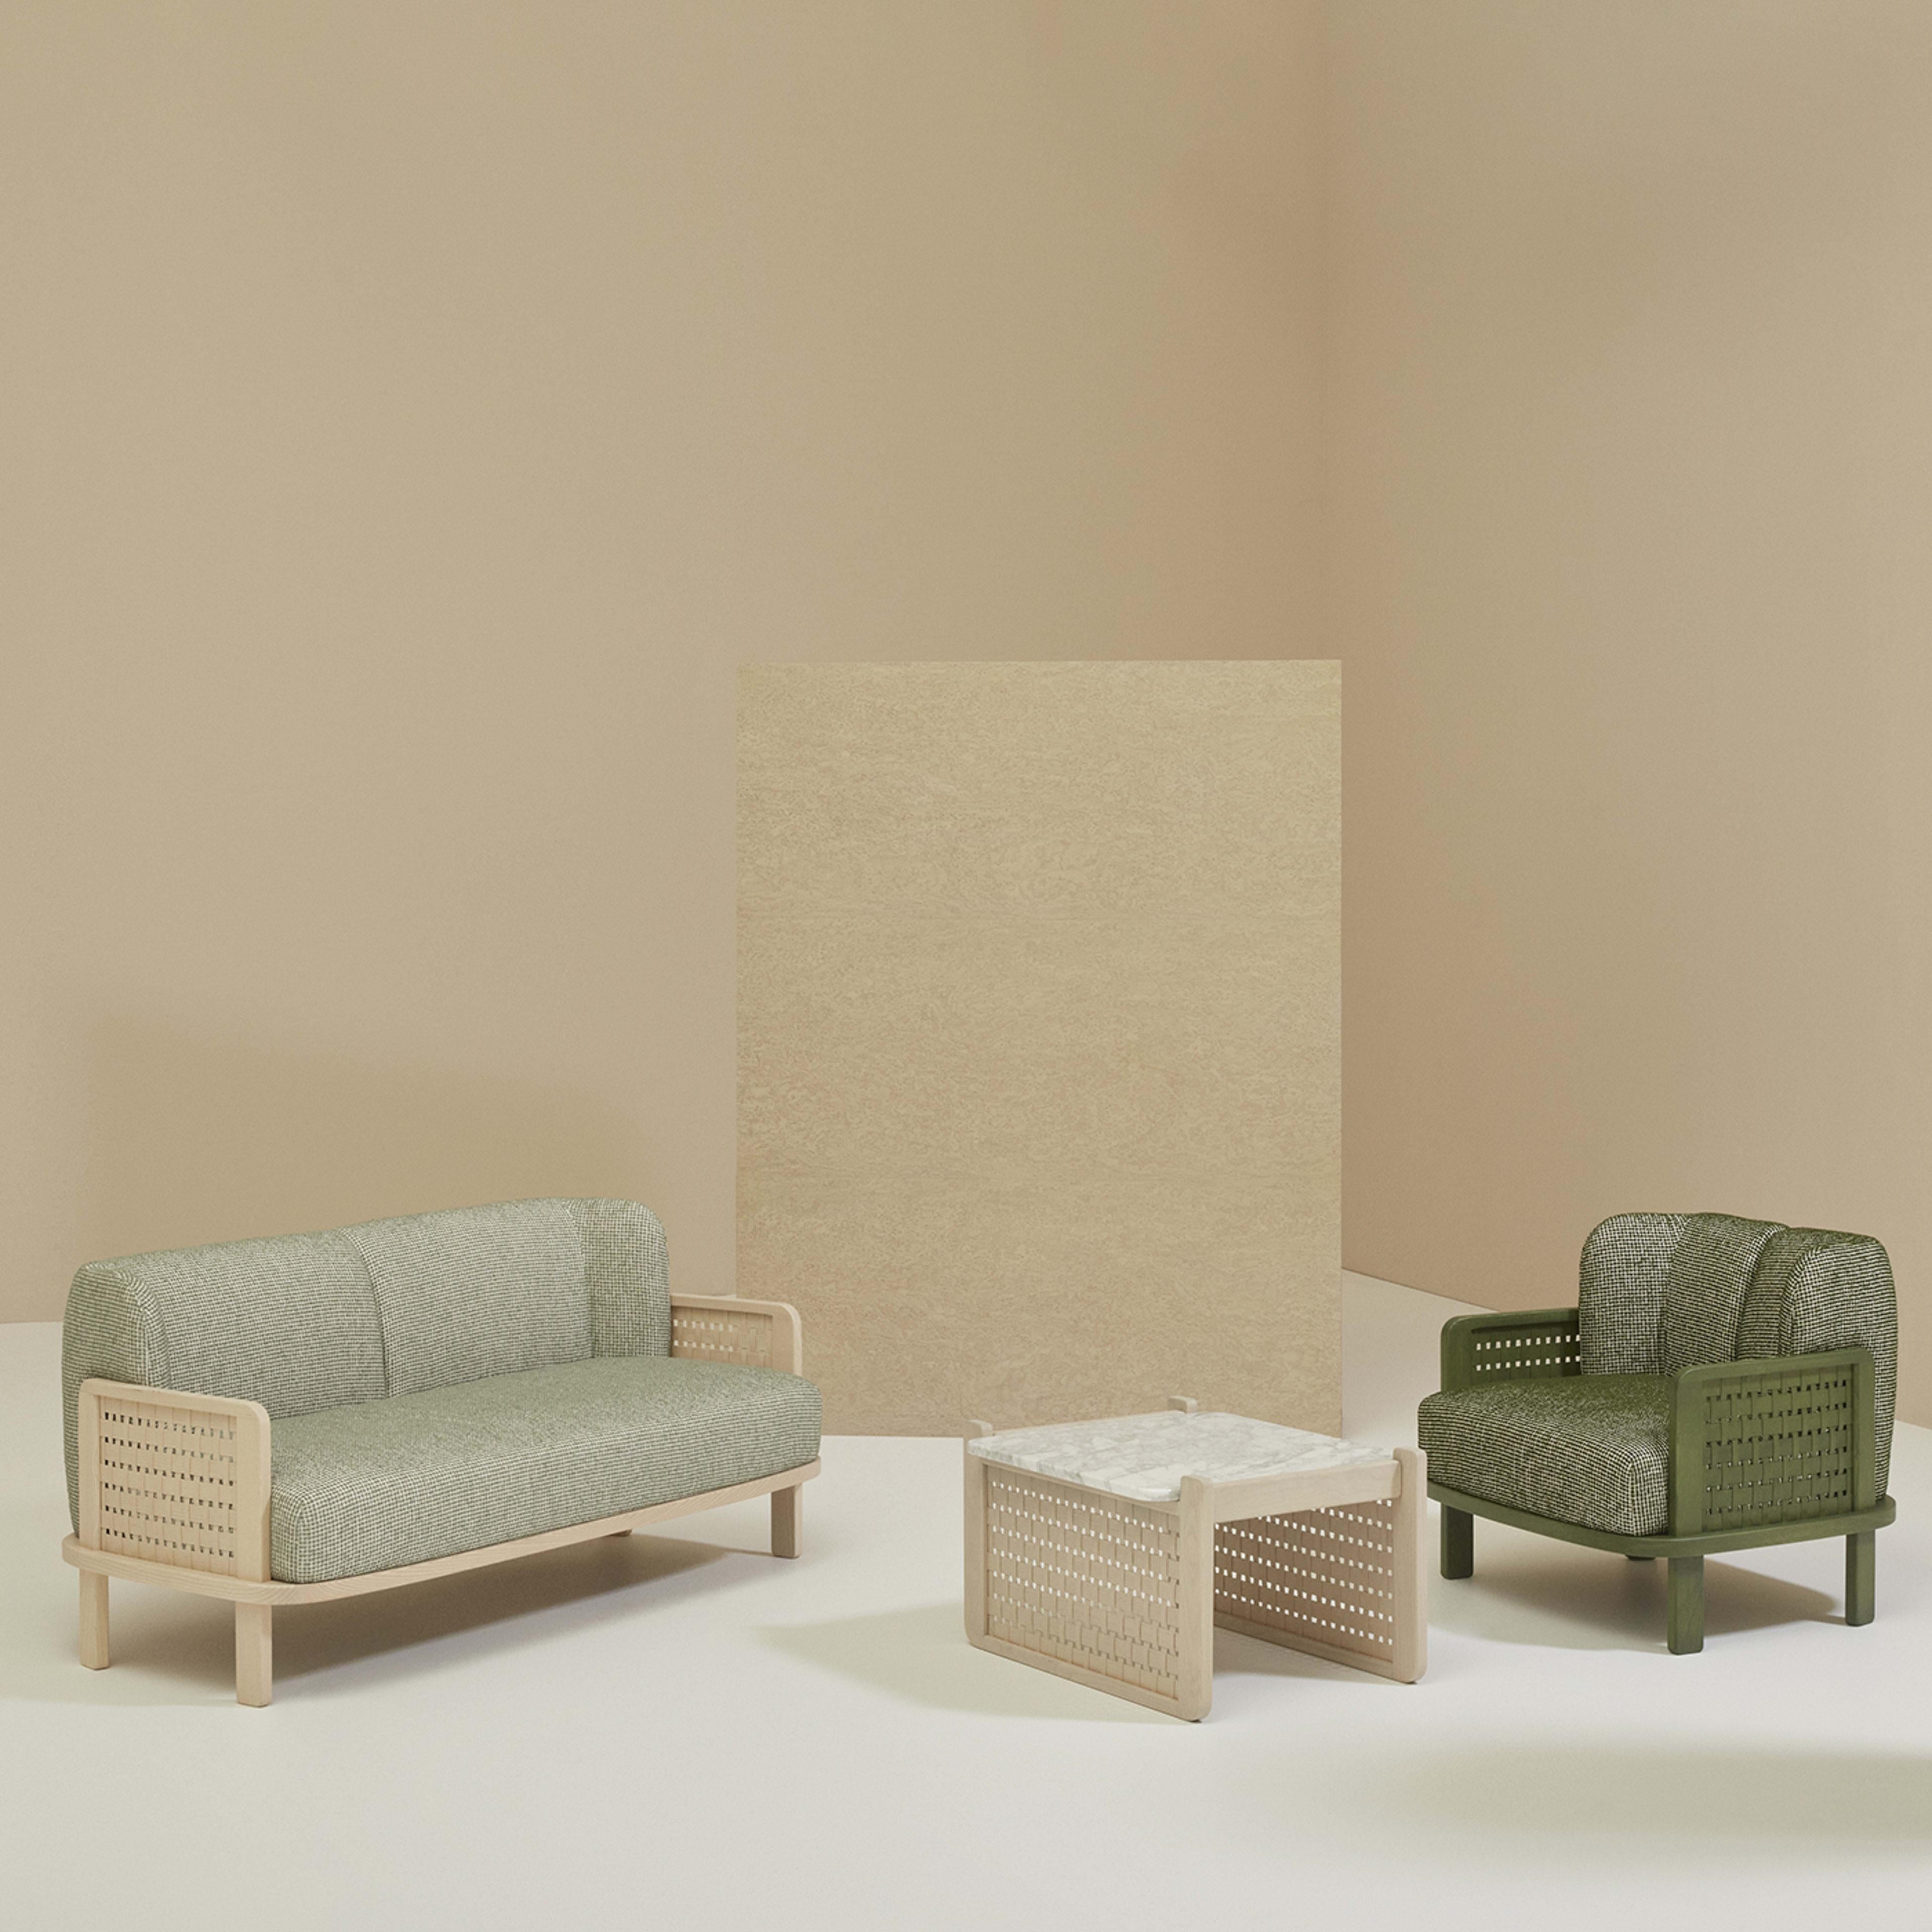 Raquette 181 Green Sofa by Cristina Celestino In New Condition For Sale In Milan, IT